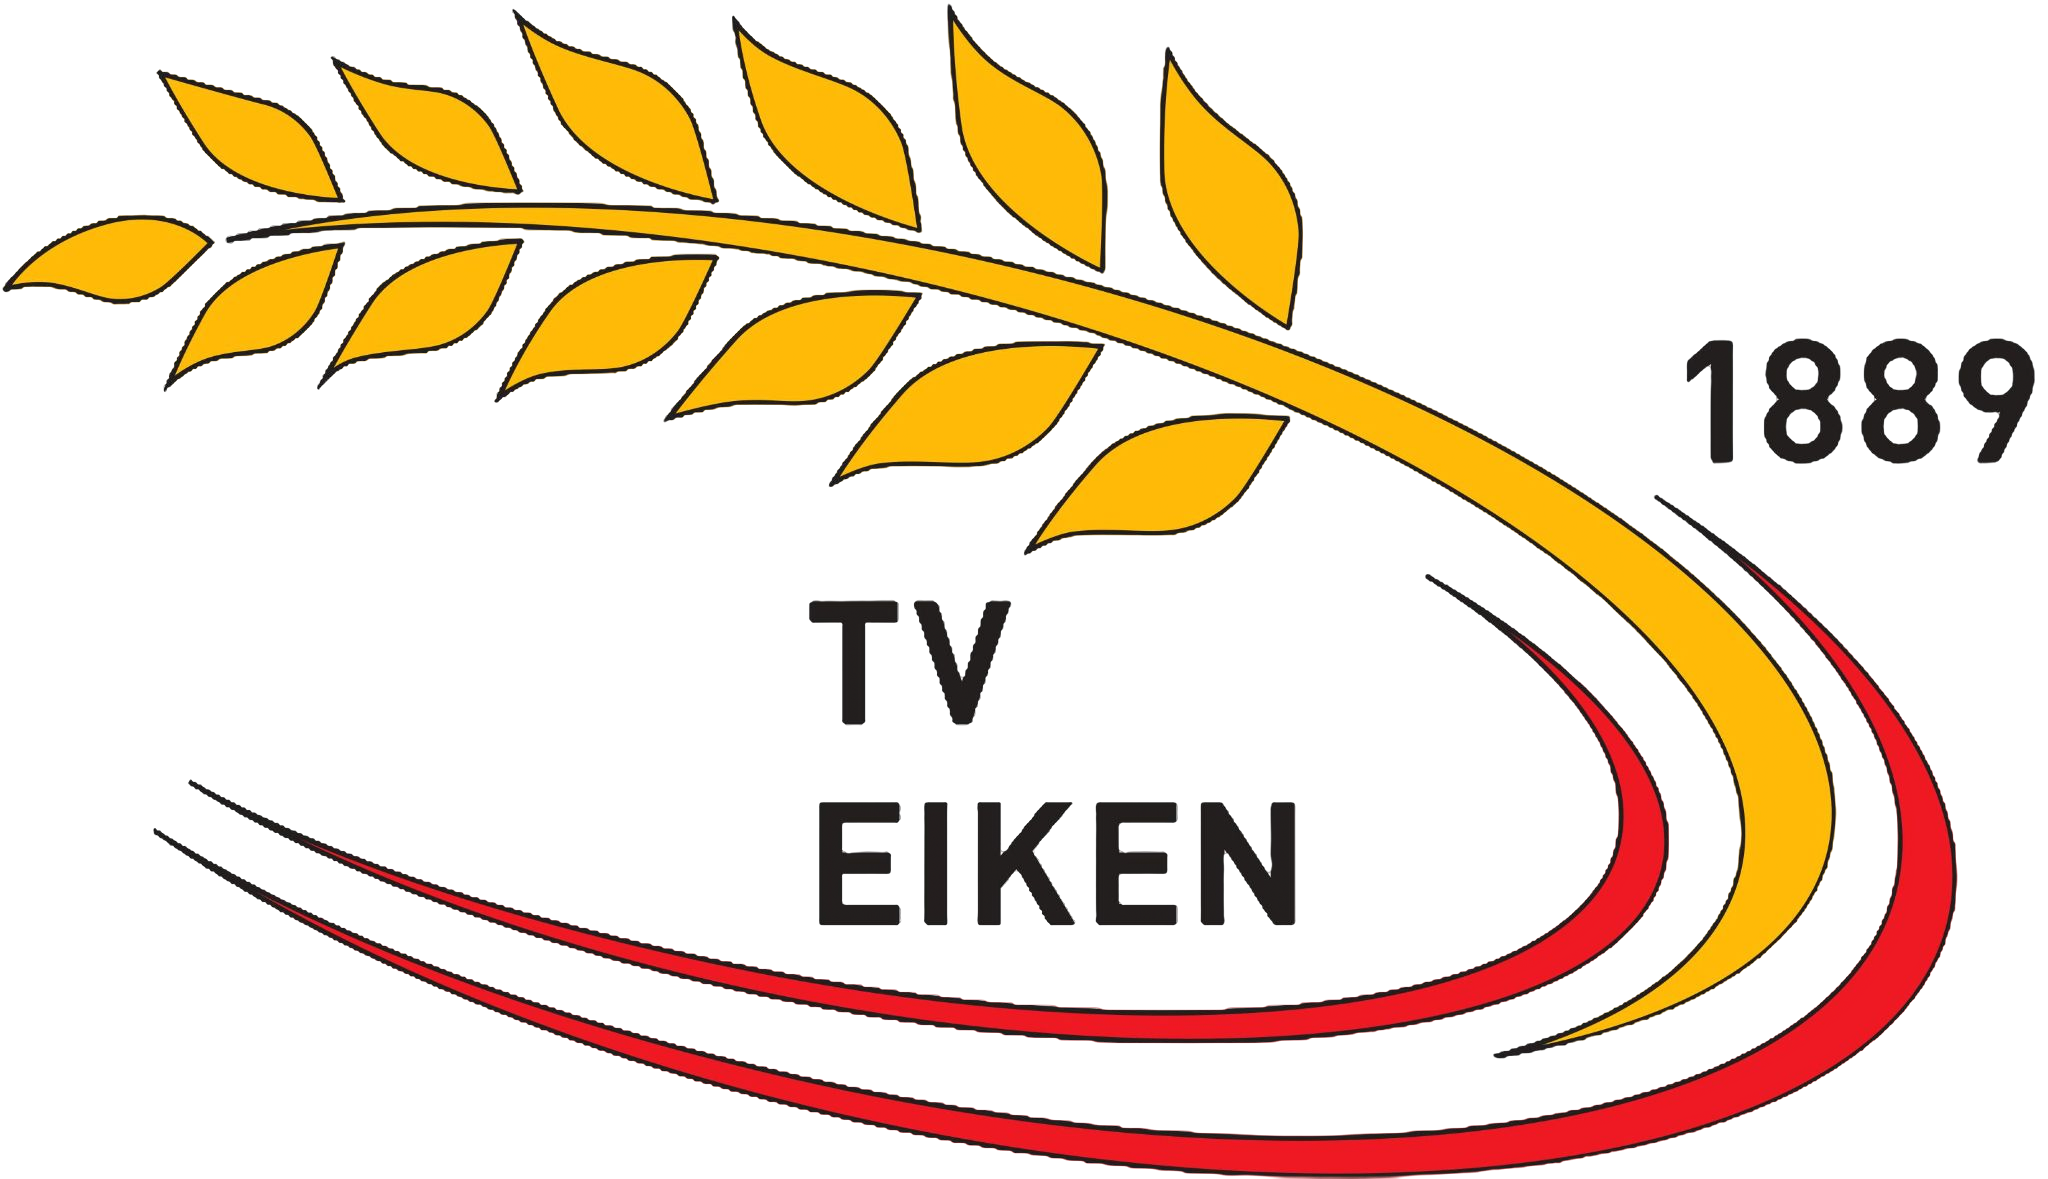 TV logo transparent